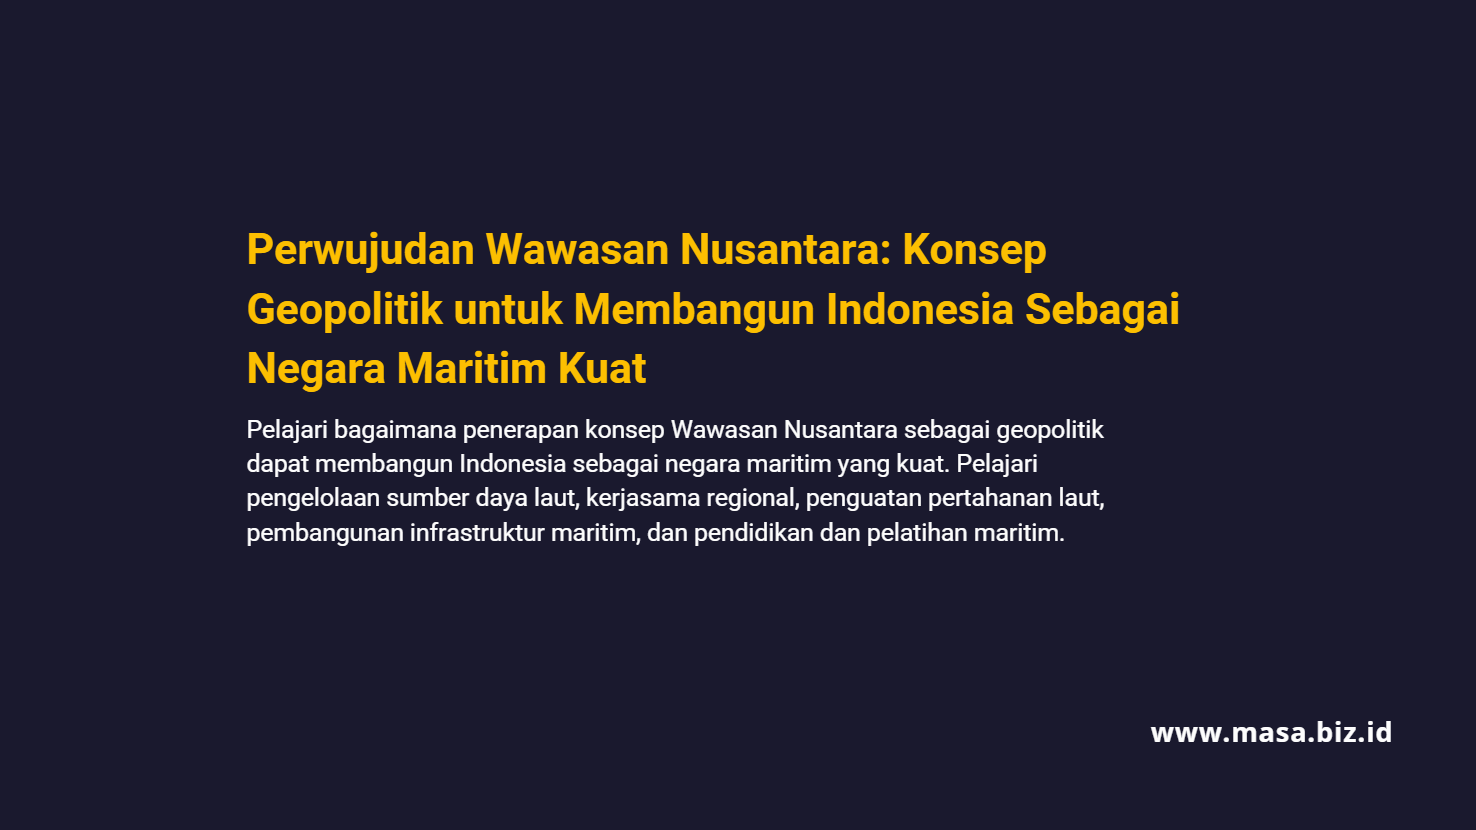 Perwujudan Wawasan Nusantara: Konsep Geopolitik untuk Membangun Indonesia Sebagai Negara Maritim Kuat